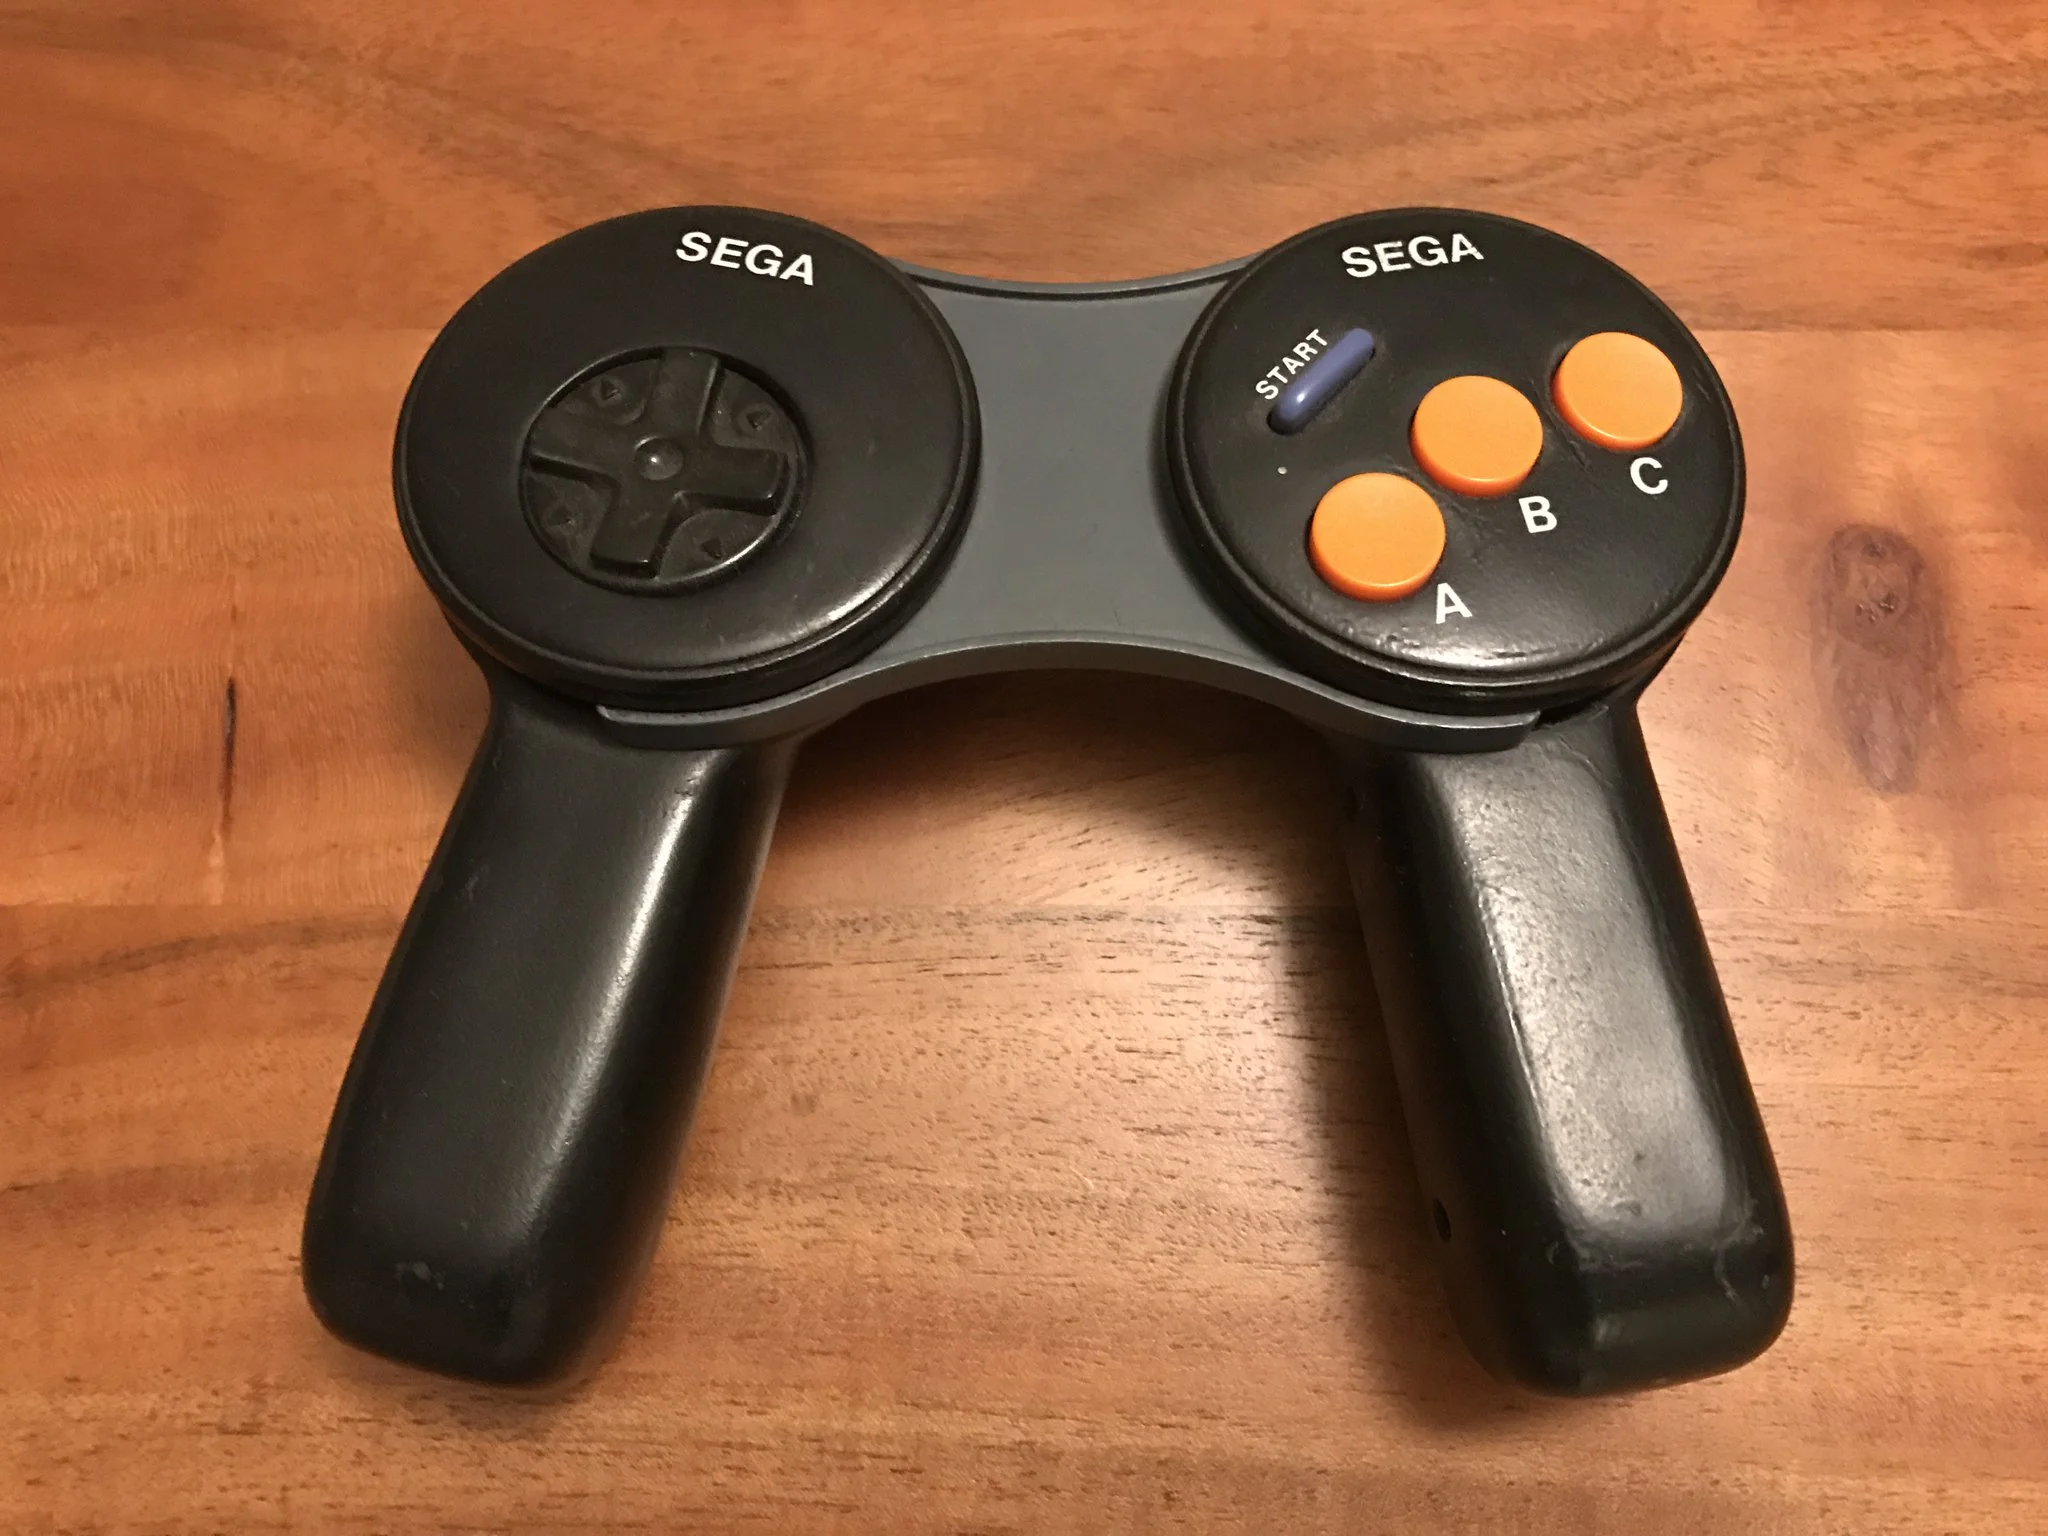  Sega Genesis Prototype Controller